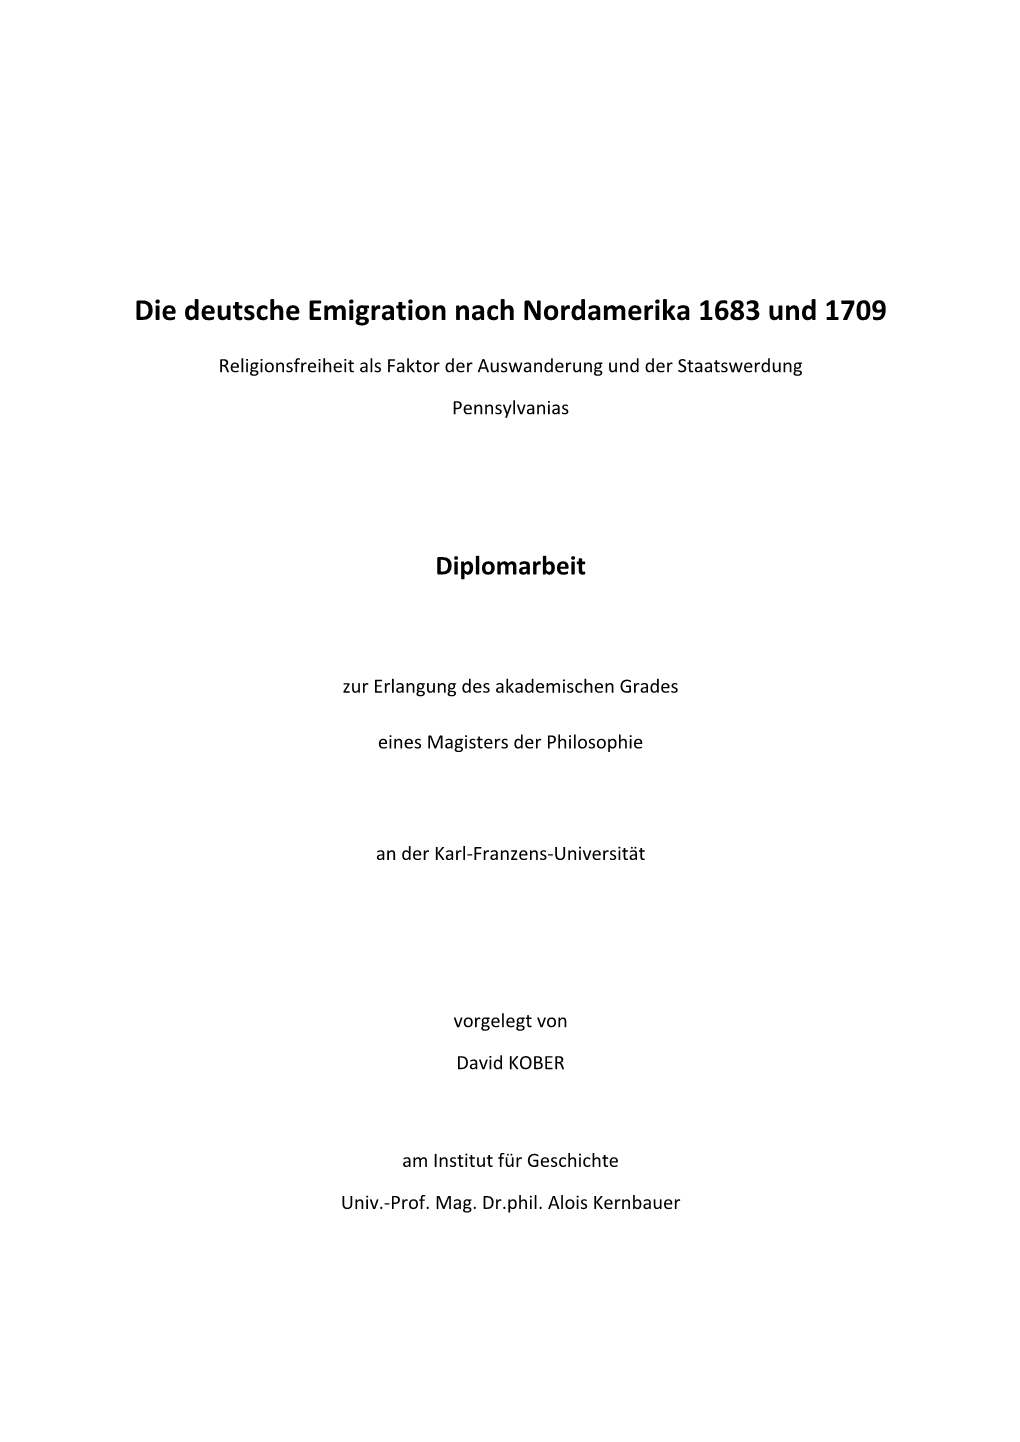 Die Deutsche Emigration Nach Nordamerika 1683 Und 1709